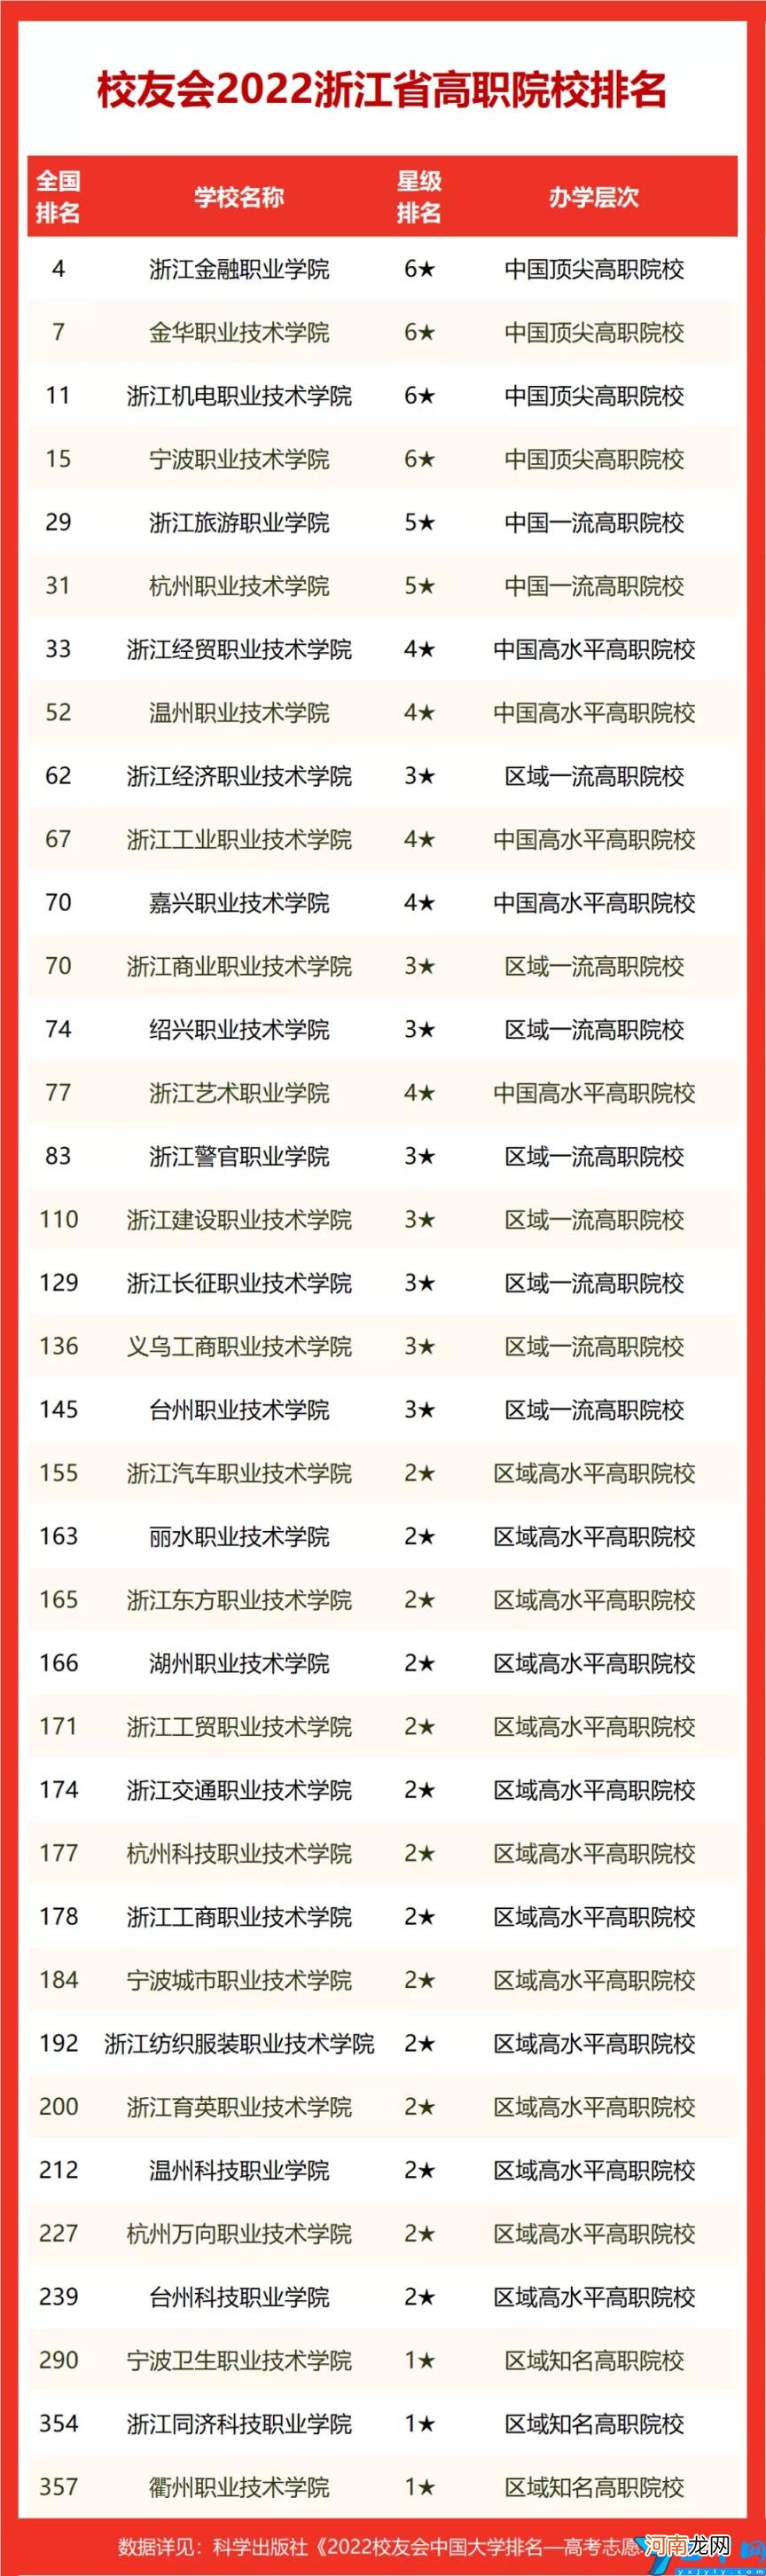 浙江省高校排行榜前十名 2022年浙江的大学排名一览表